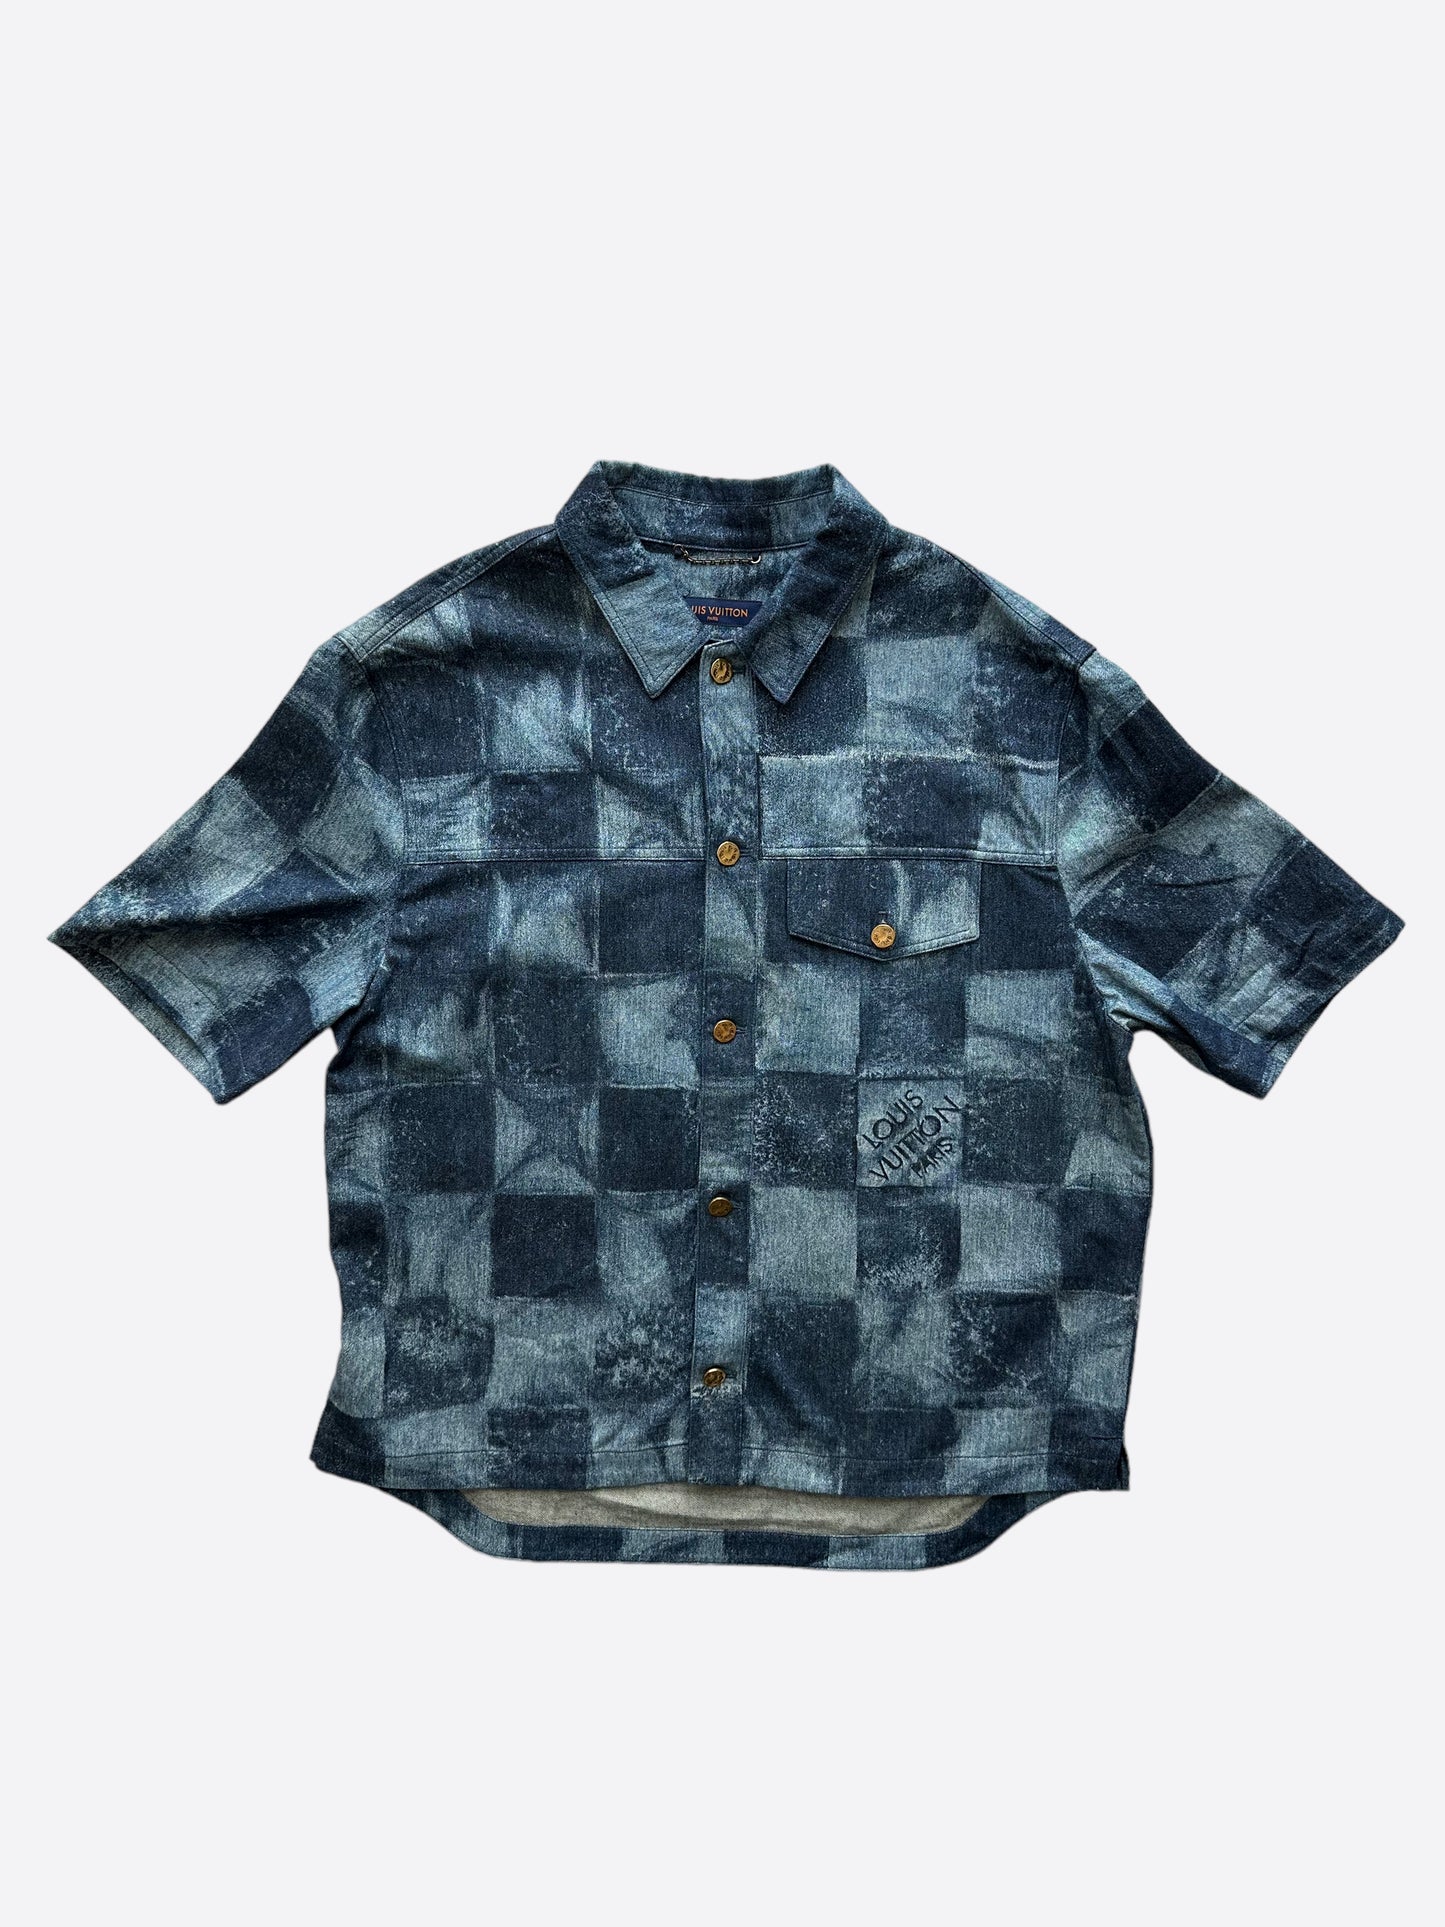 Louis Vuitton Graphic Cotton Short-sleeved T-Shirt Oil. Size 4L